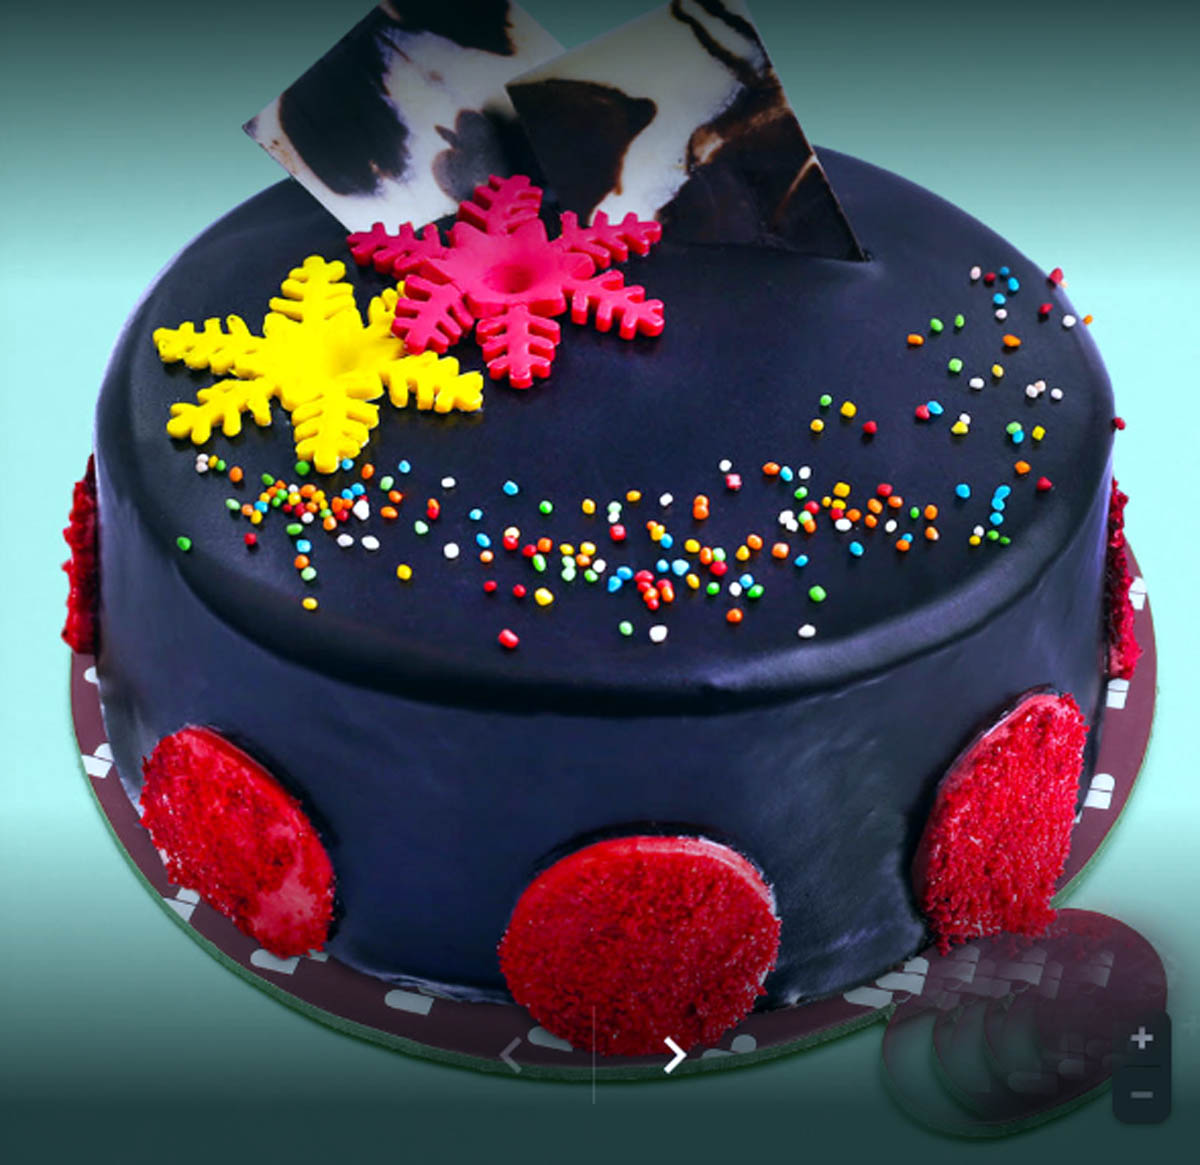 Cake, Cake, and More Cake! - KAYLA KNIGHT CAKES